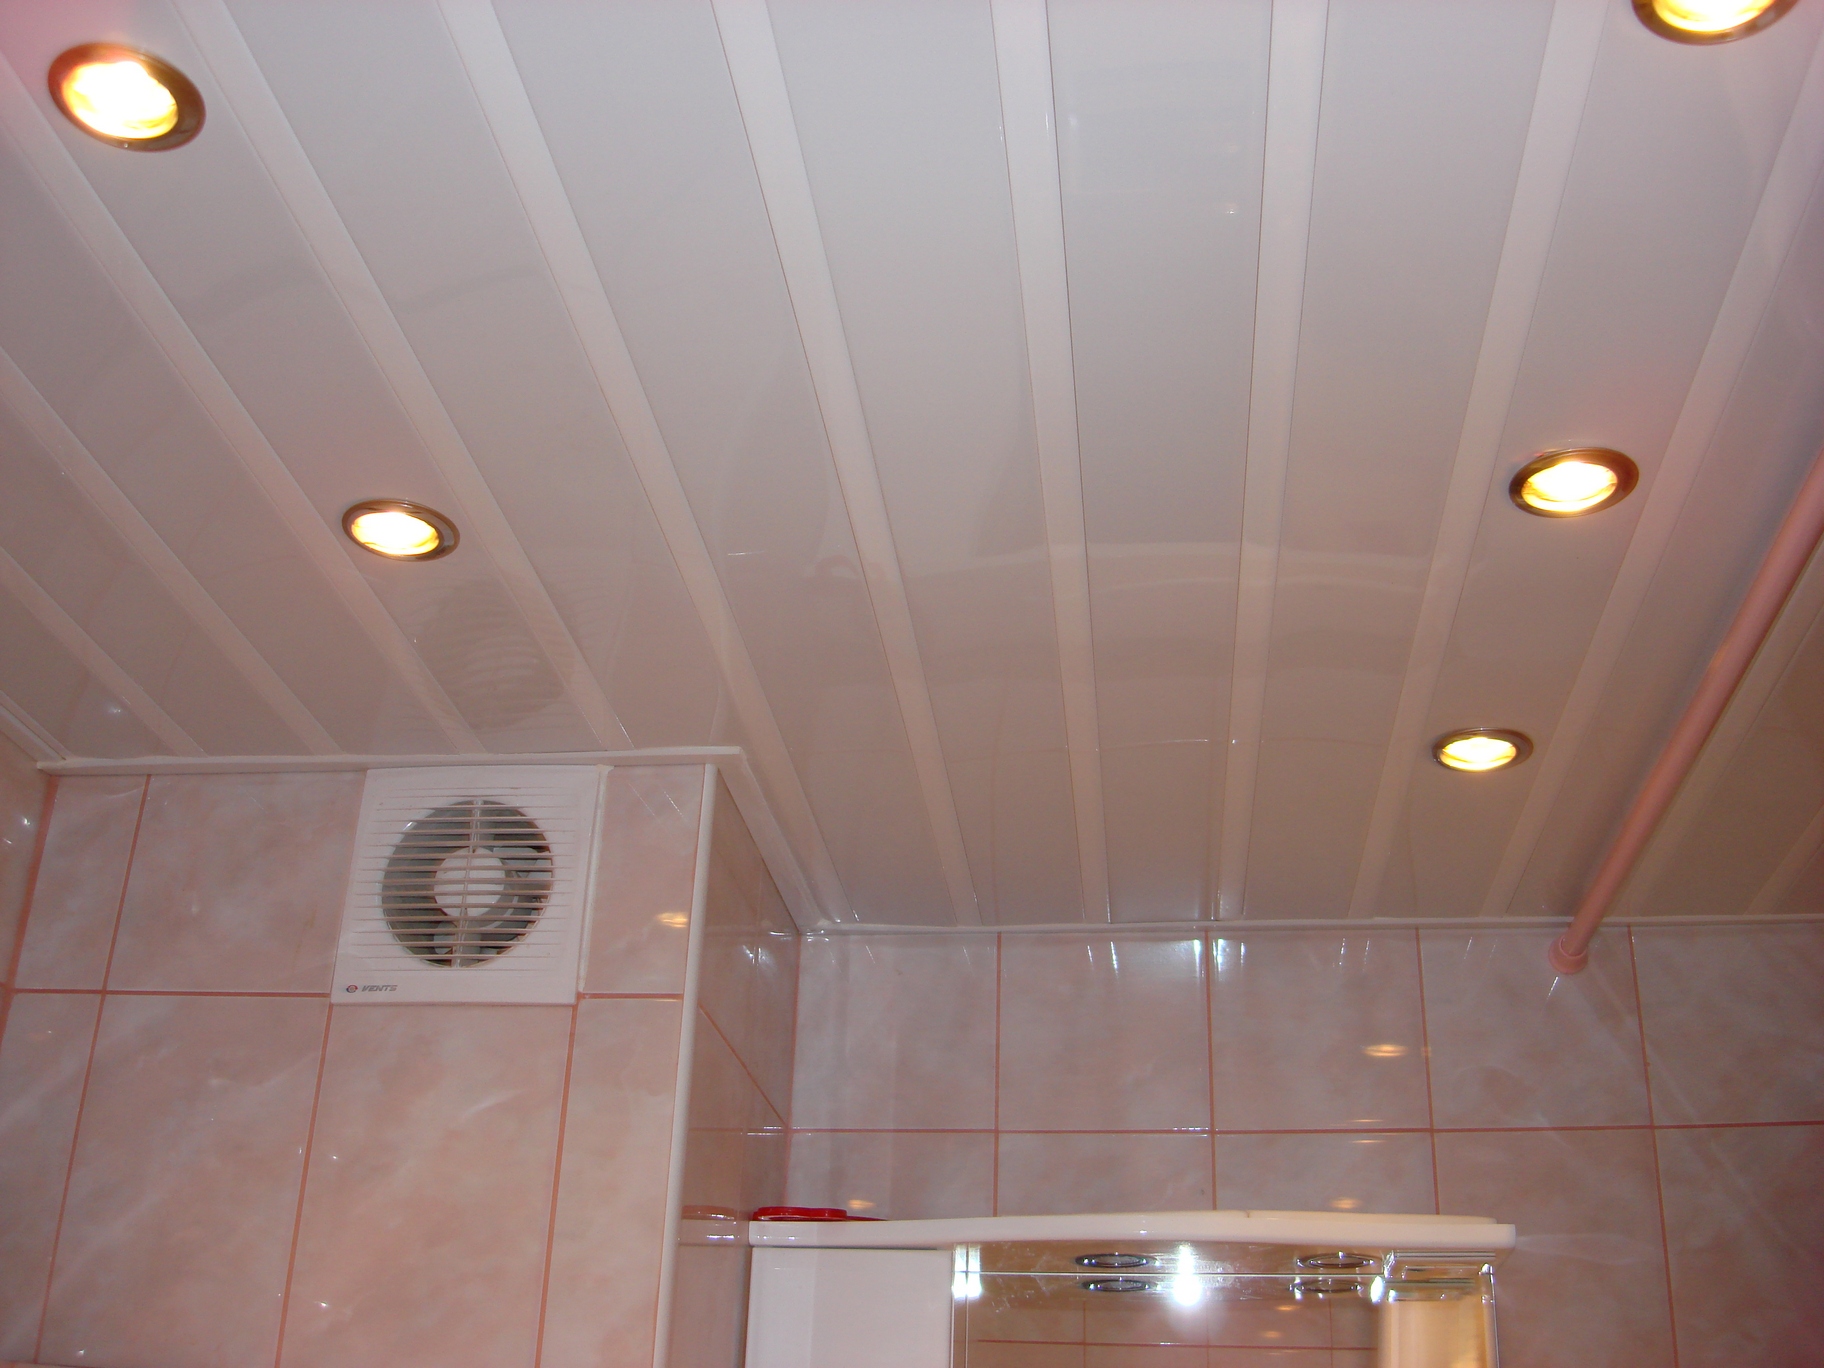 Подвесной потолок пвх панелями. Альконпласт реечный потолок. Албес реечный потолок ванной. Пластиковый потолок в ванной. Подвесной потолок в ванную.